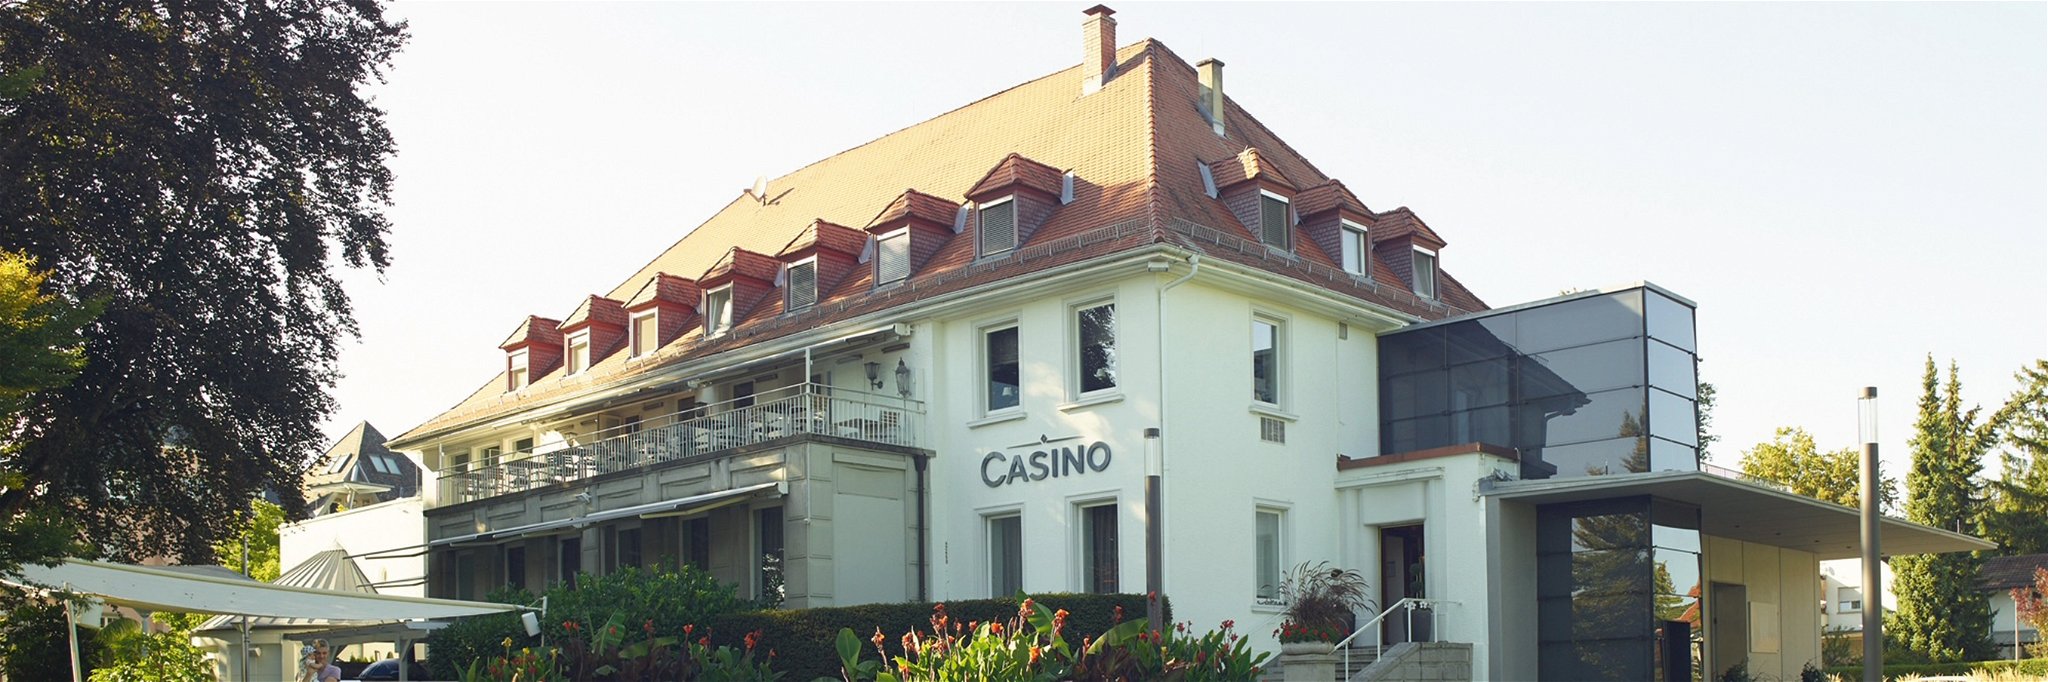 Das Casino Konstanz bildete den Rahmen für die Veranstaltung